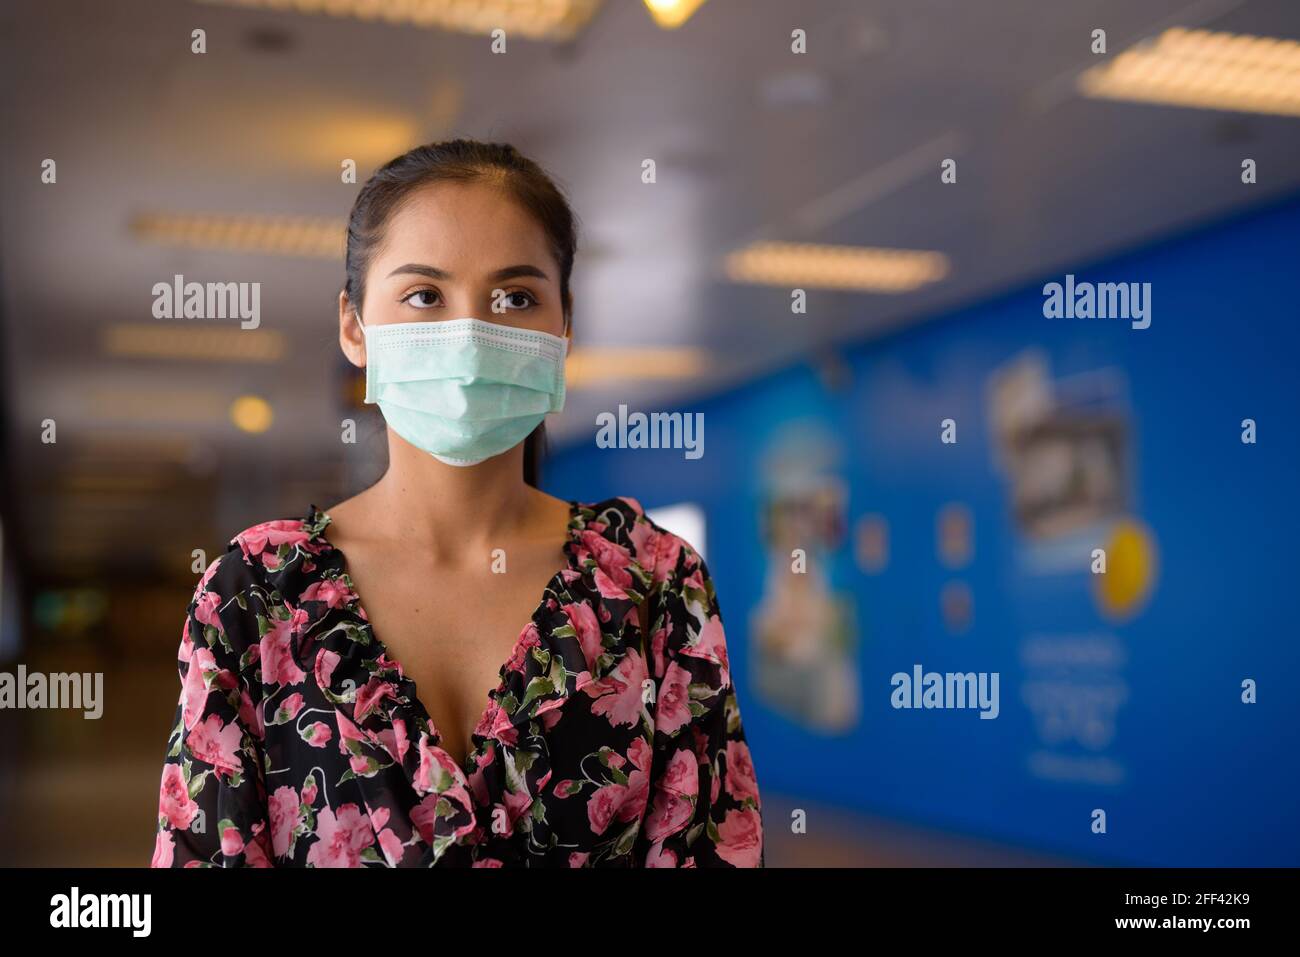 Ritratto di donna che indossa maschera per la protezione contro il coronavirus Covid-19 Foto Stock